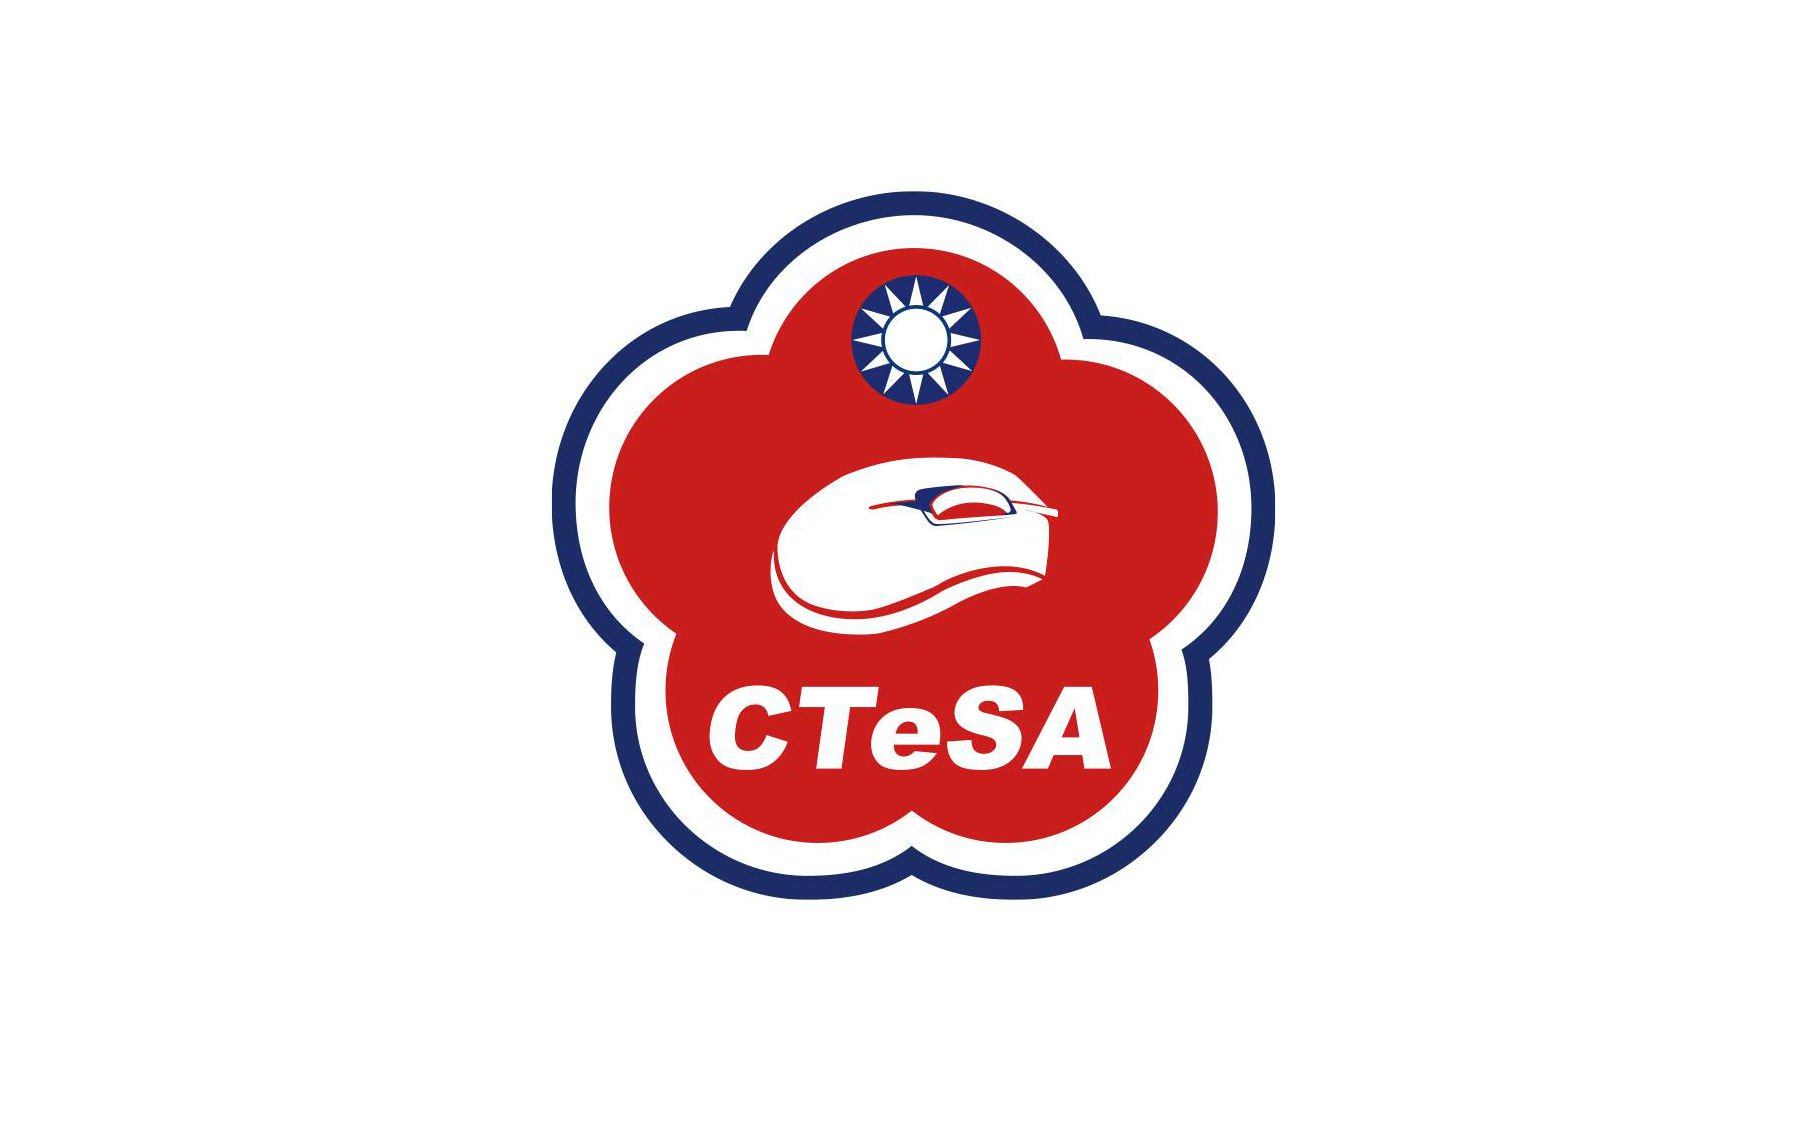 CTeSA筹组台湾电竞代表队用Logo上这鼠标稳输的吧